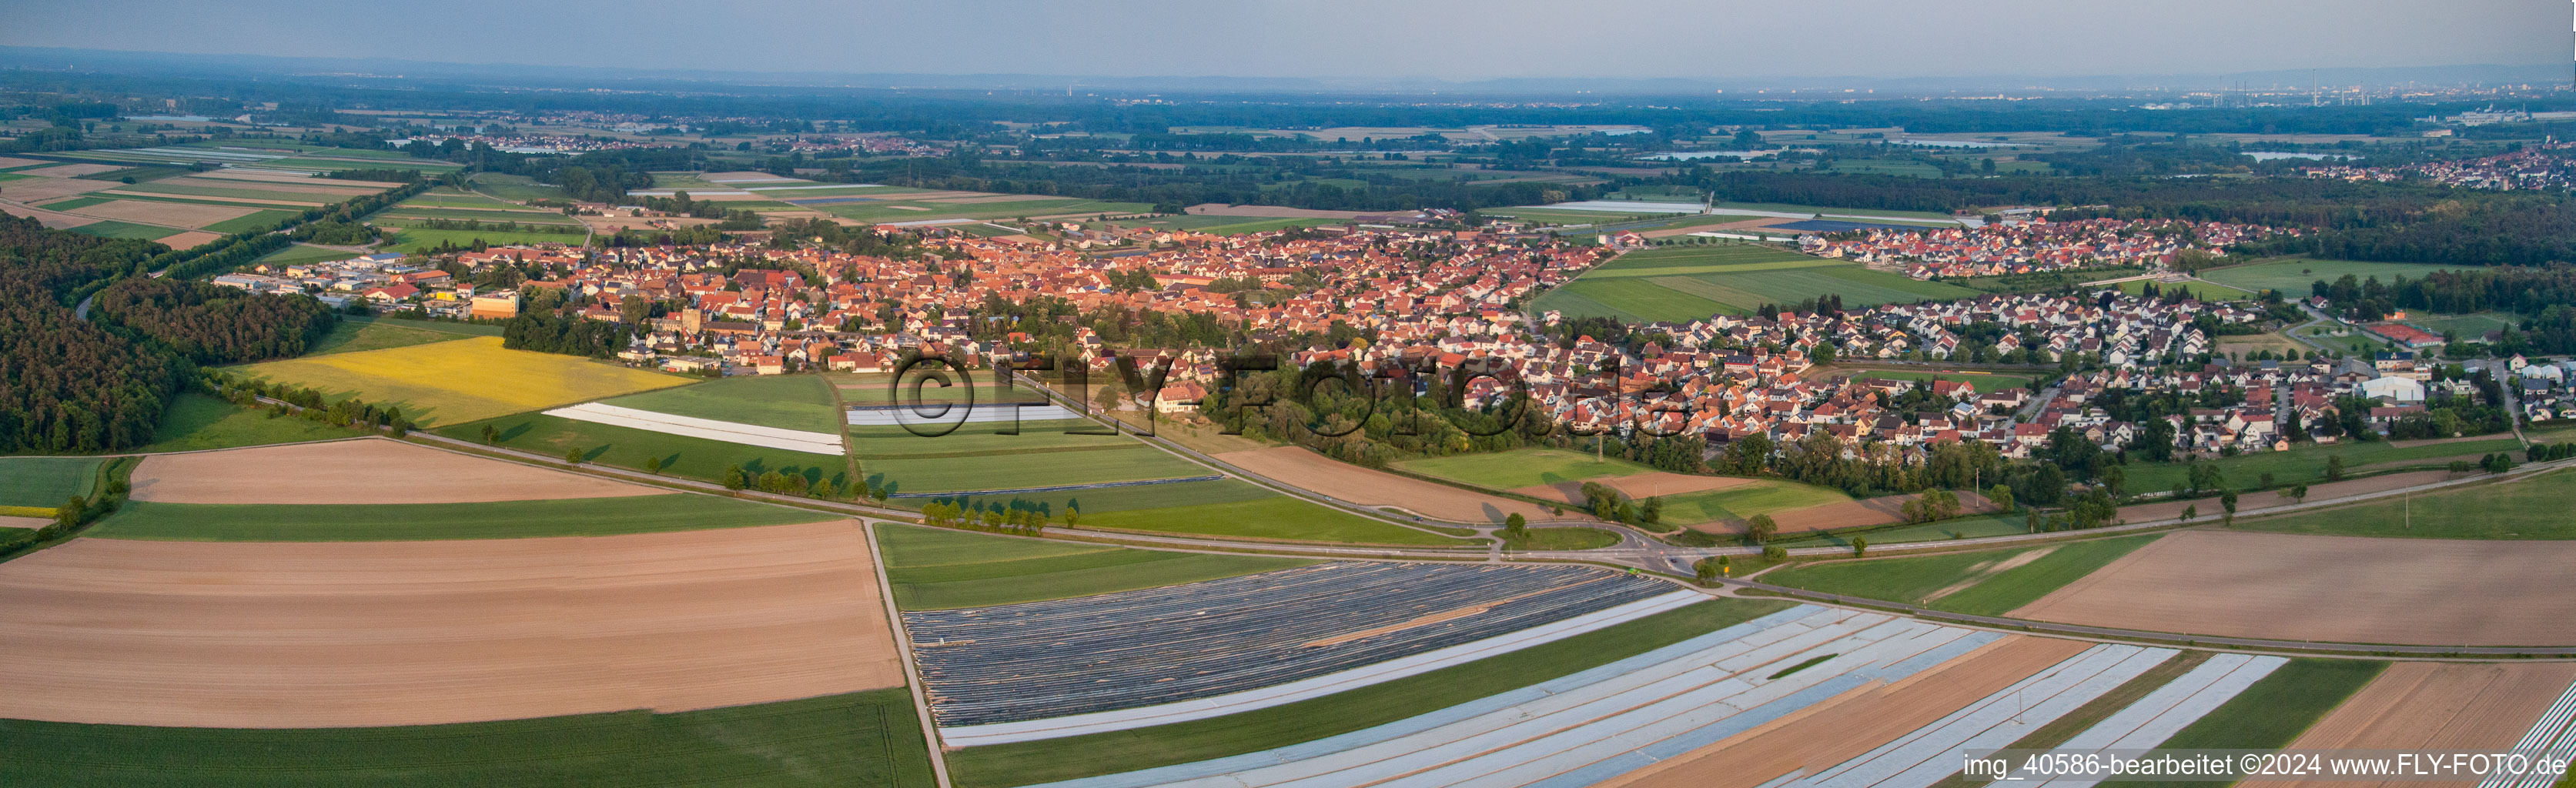 Panorama Perspektive der Dorf - Ansicht am Rande von landwirtschaftlichen Feldern und Nutzflächen in Rheinzabern im Bundesland Rheinland-Pfalz, Deutschland